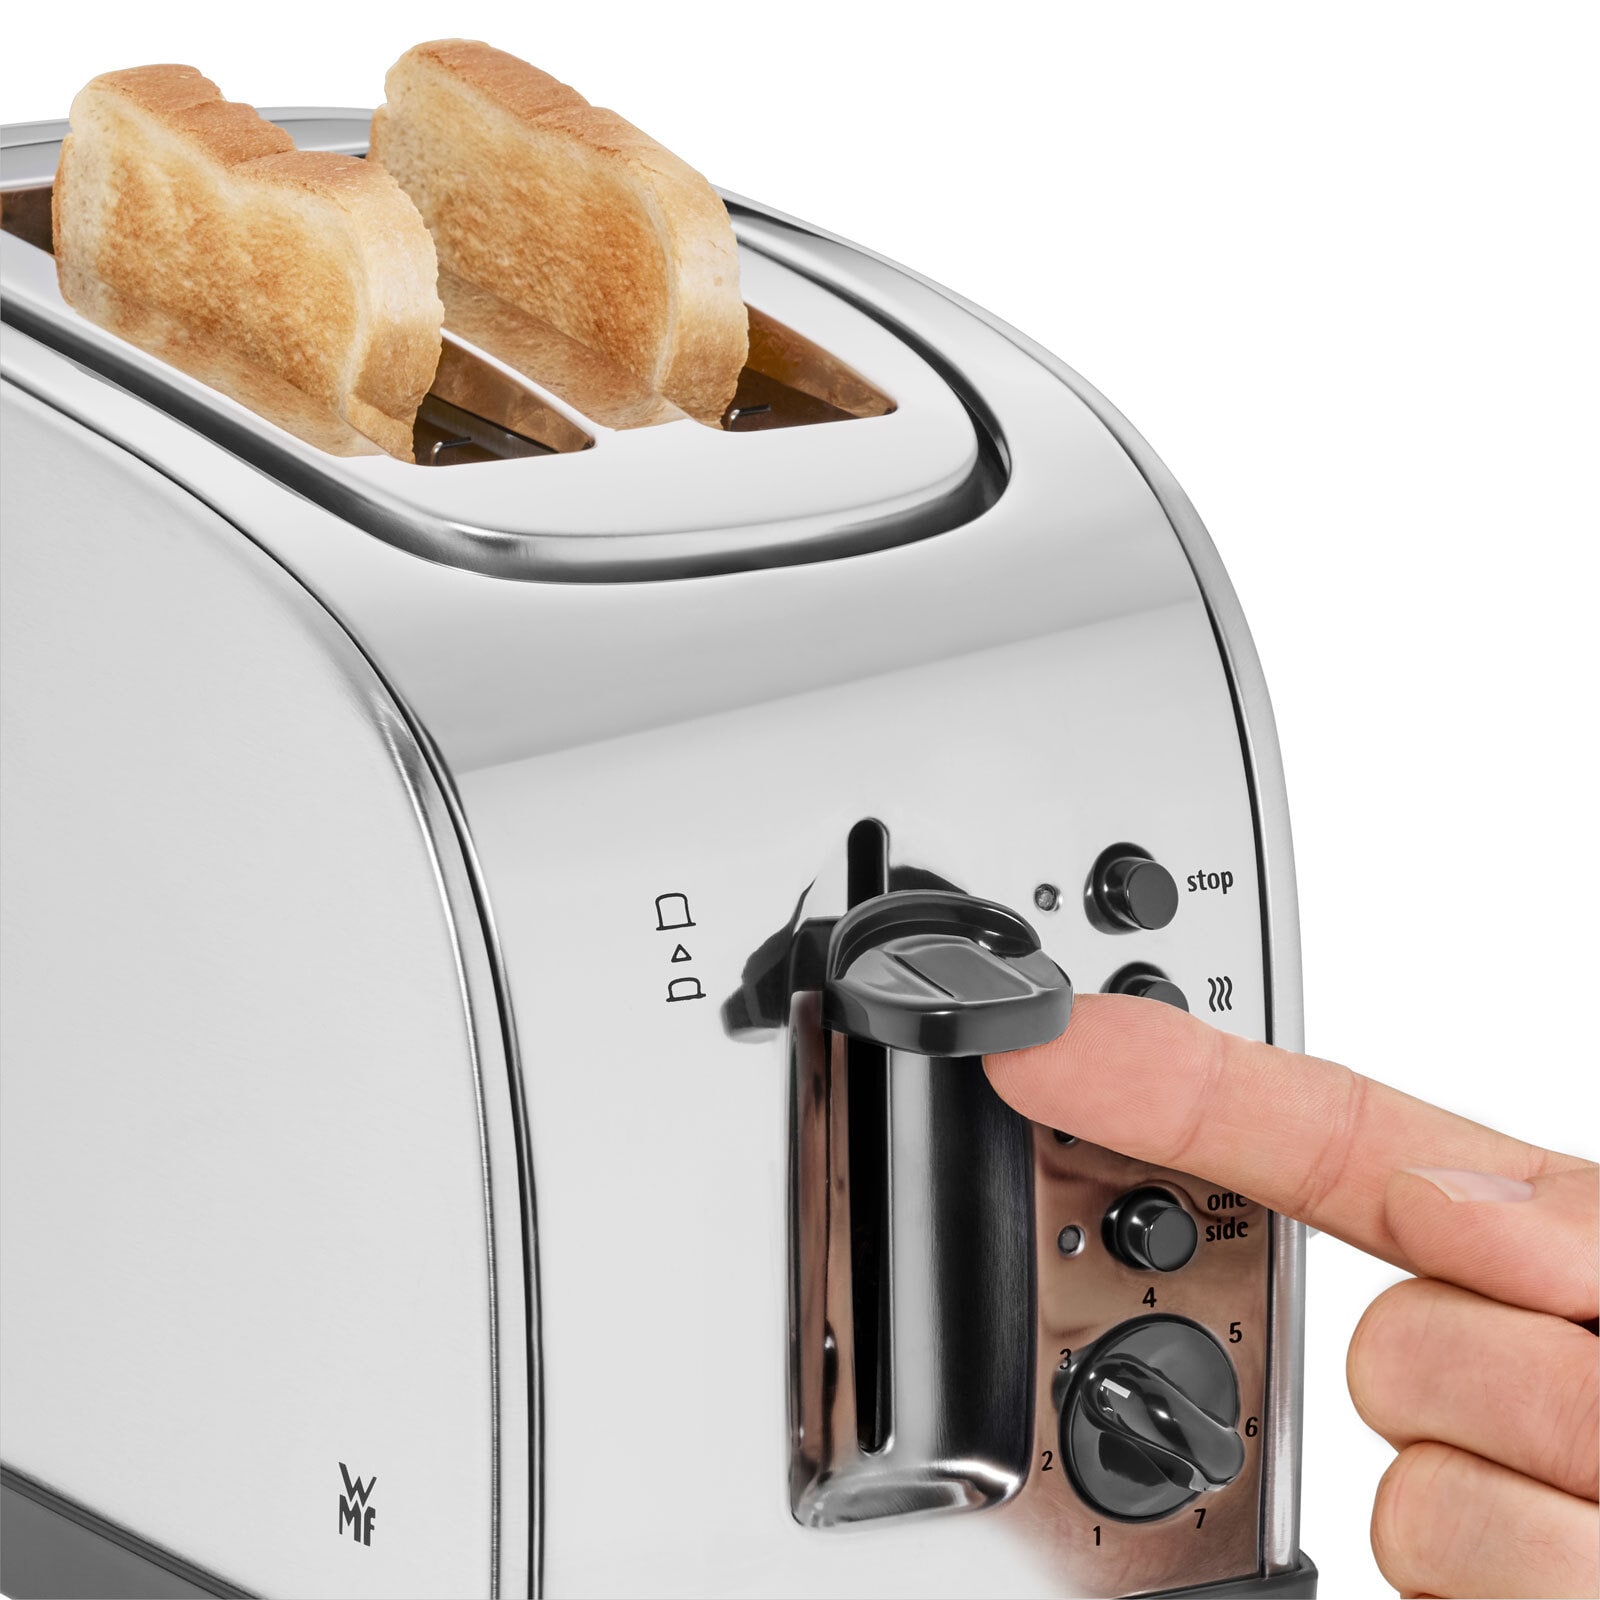 WMF Toaster STELIO